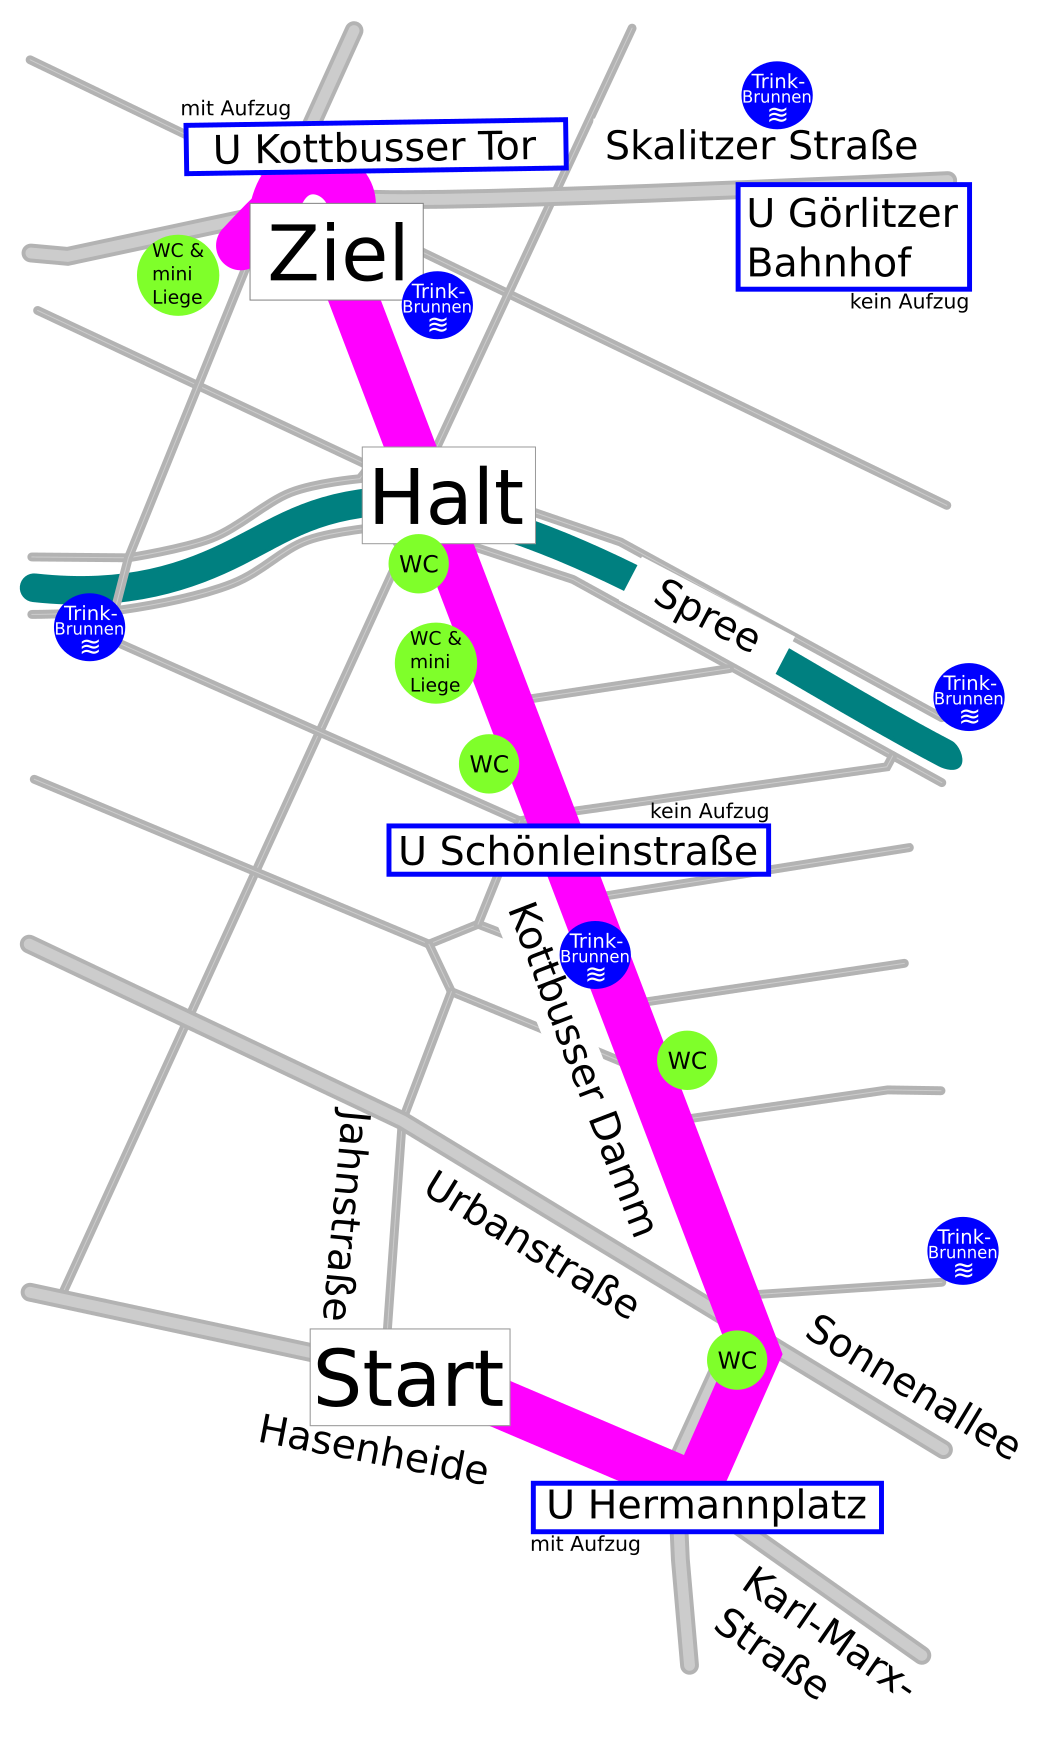 Eine kontrastreiche Kartendarstellung der Paradestrecke von der Kreuzung Hasenheide Ecke Jahnstraße über den Hermannplatz und die Kottbusser Brücke bis zum Kottbusser Tor mit angrenzenden Straßen, rollstuhlgerechten WCs und U-Bahnhöfen.